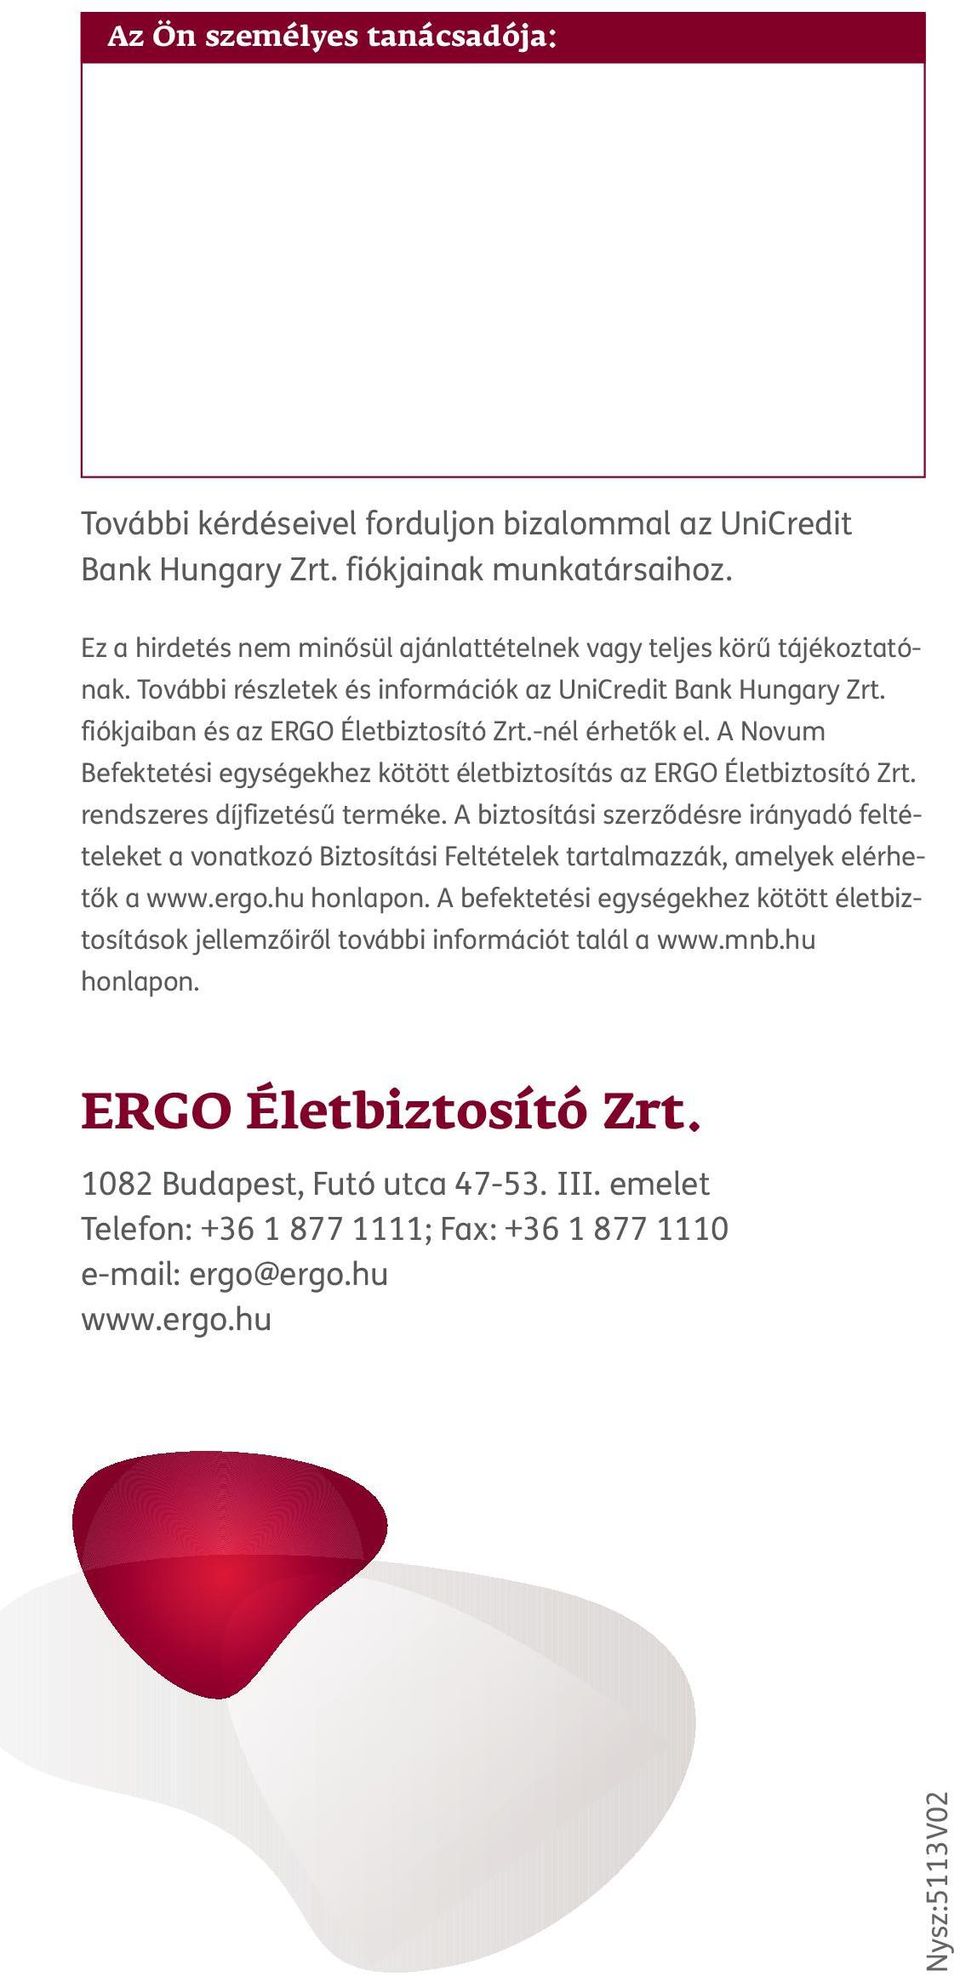 A Novum Befektetési egységekhez kötött életbiztosítás az ERGO Életbiztosító Zrt. rendszeres díjfizetésű terméke.